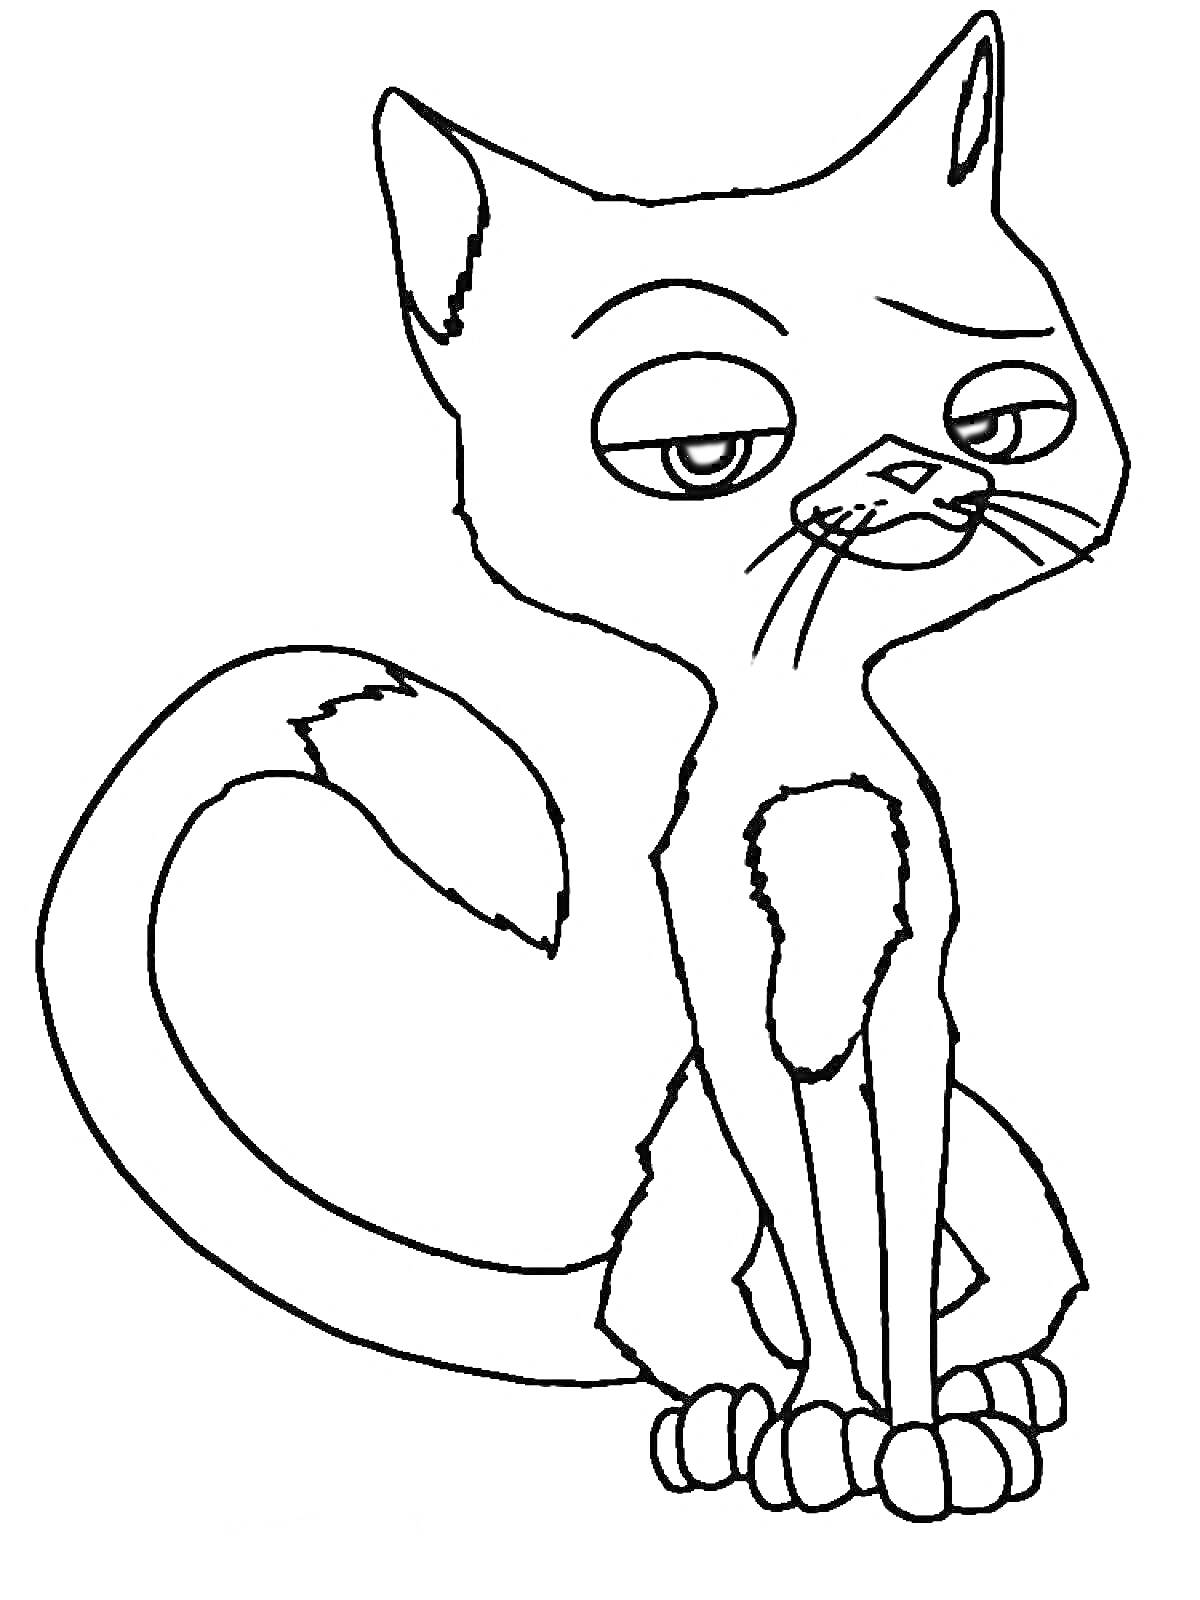 Раскраска Кошка с пренебрежительным выражением лица из мультфильма 